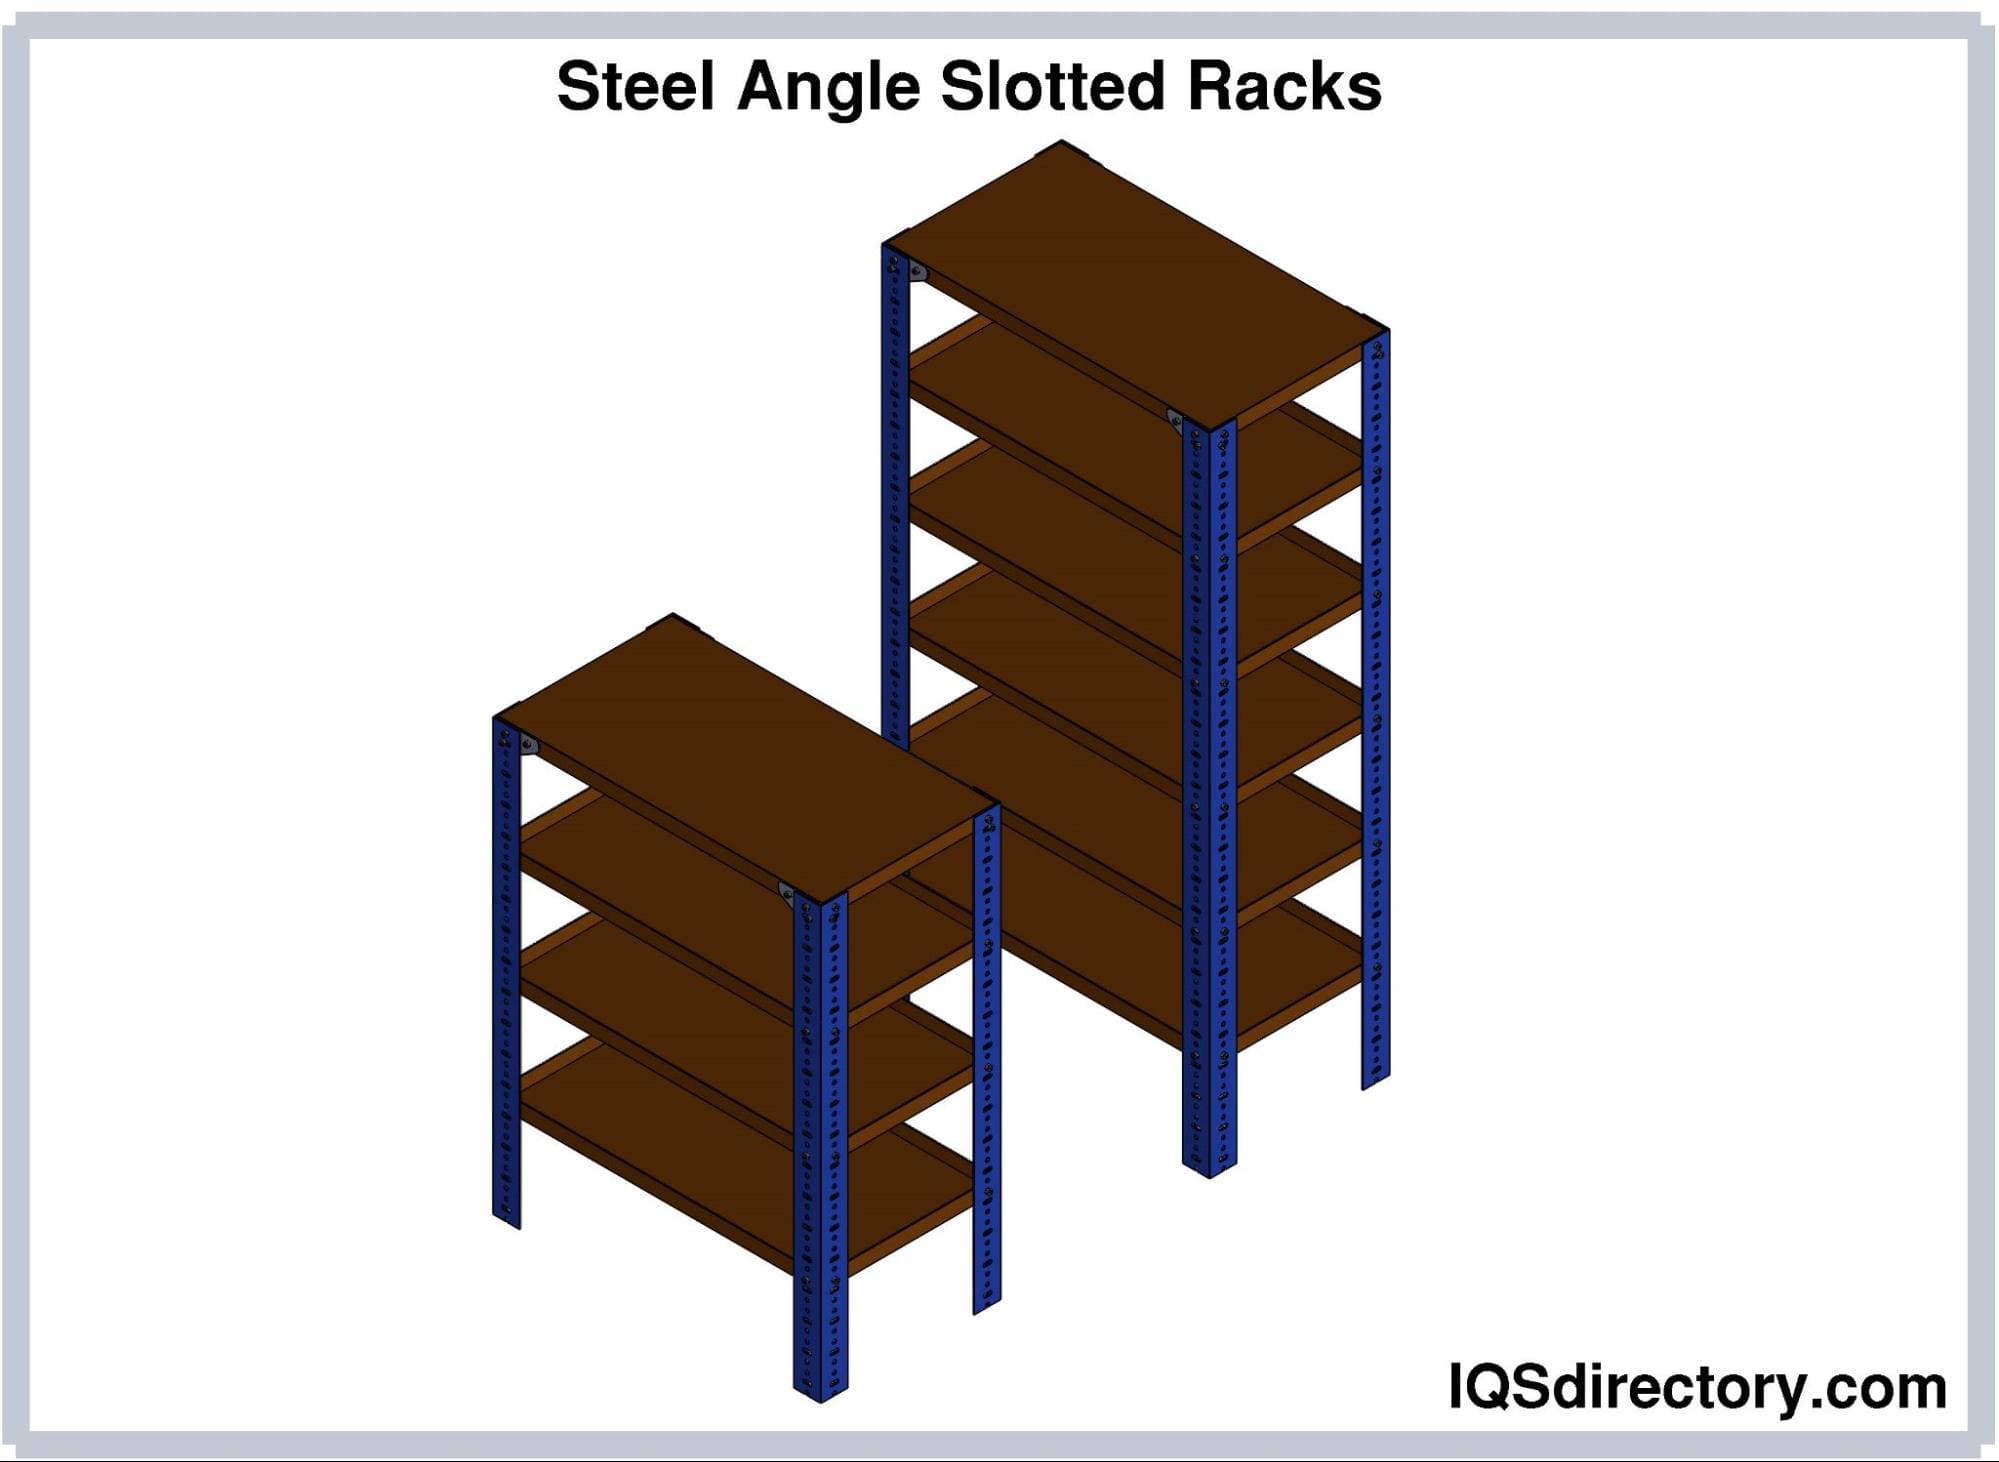 Steel Angle Slotted Racks